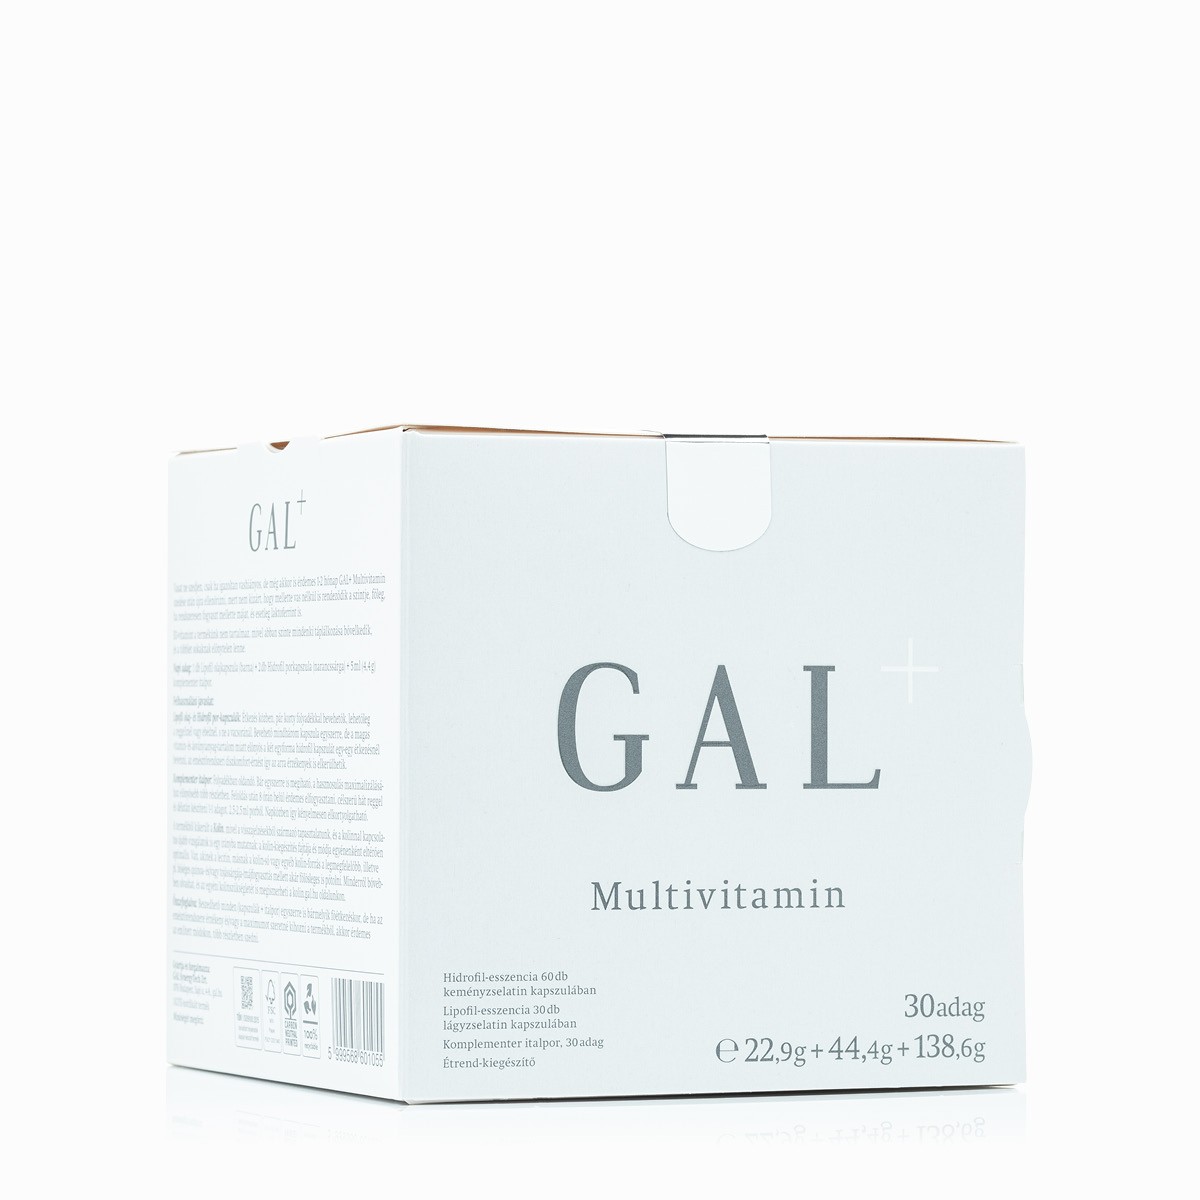 GAL_+_Multivitamin_60+30+italpor_nutribalance